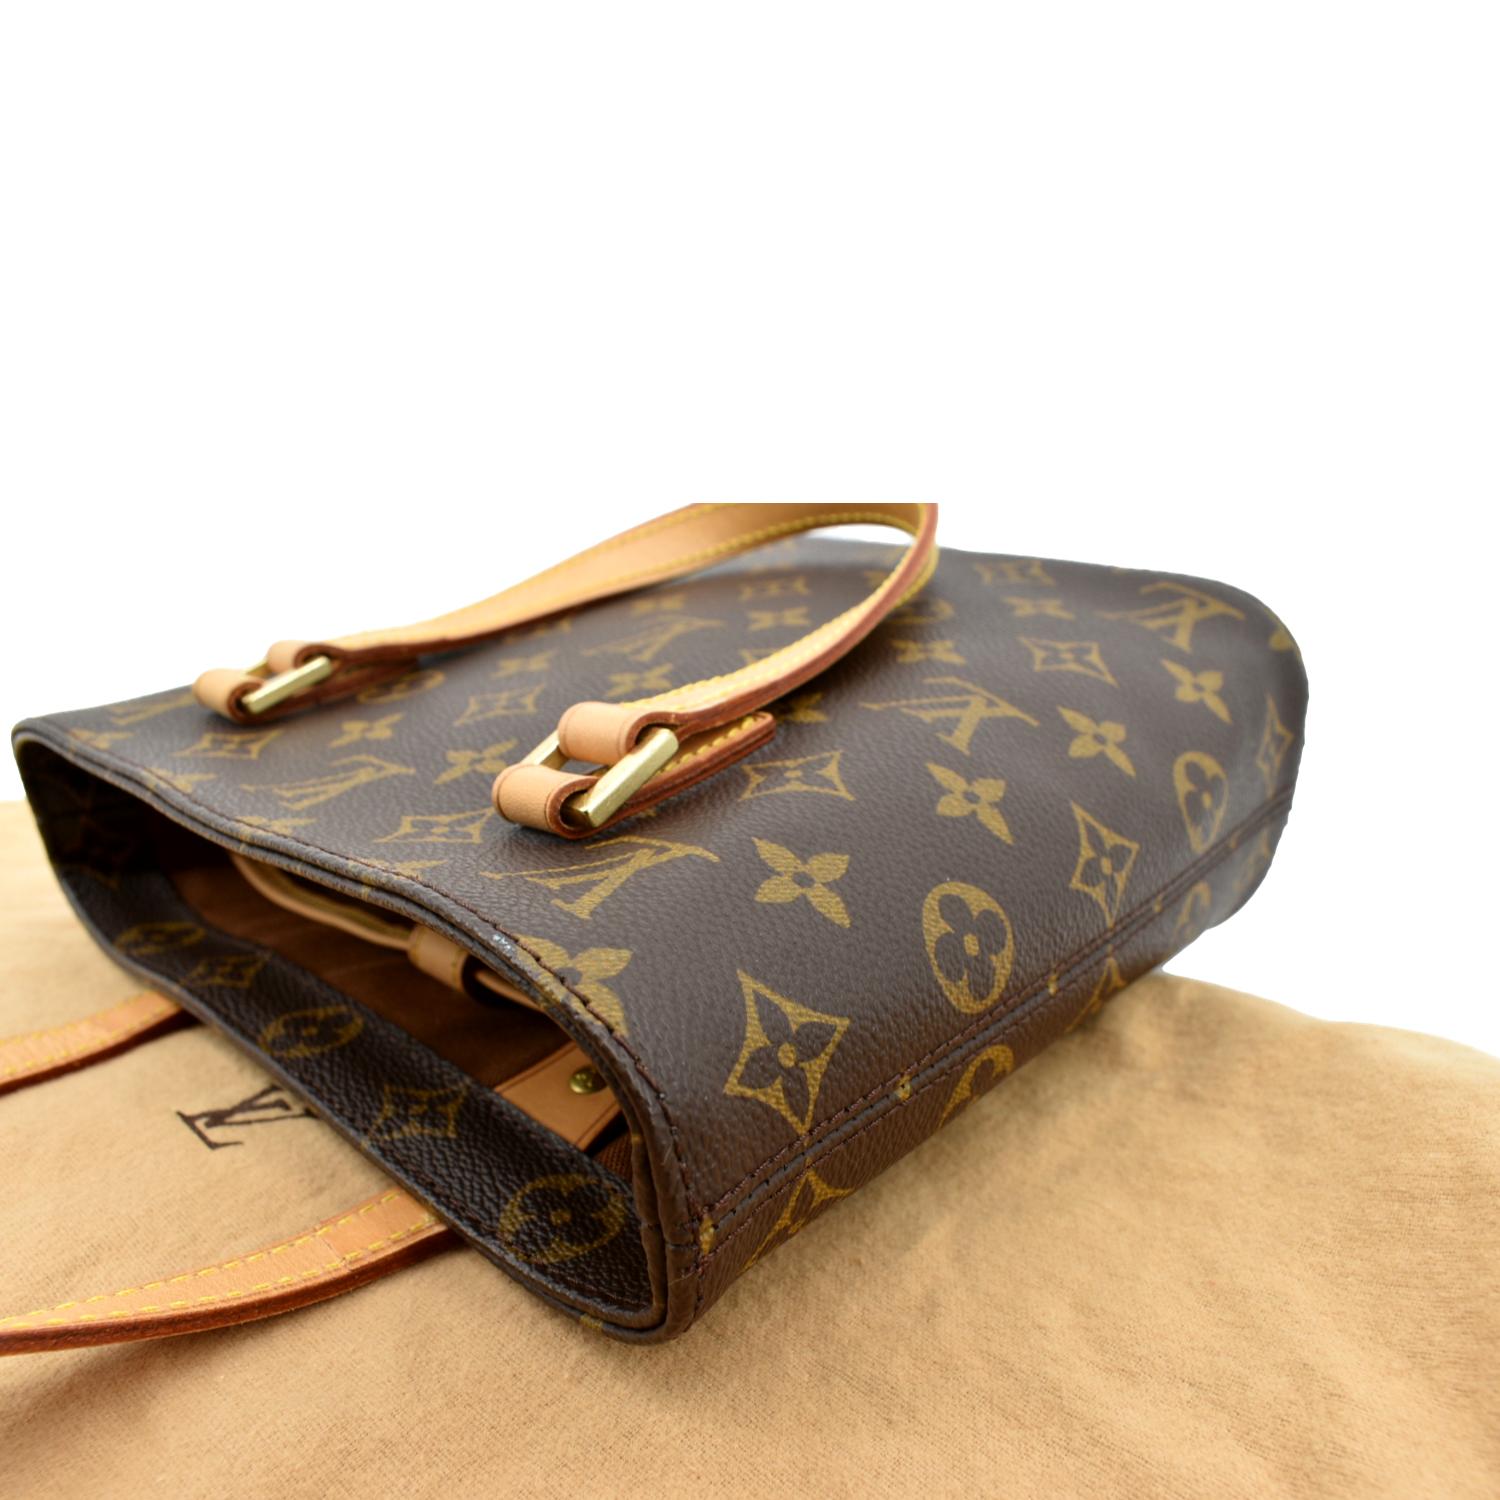 Louis Vuitton Popincourt PM Monogram Canvas Shoulder Bag